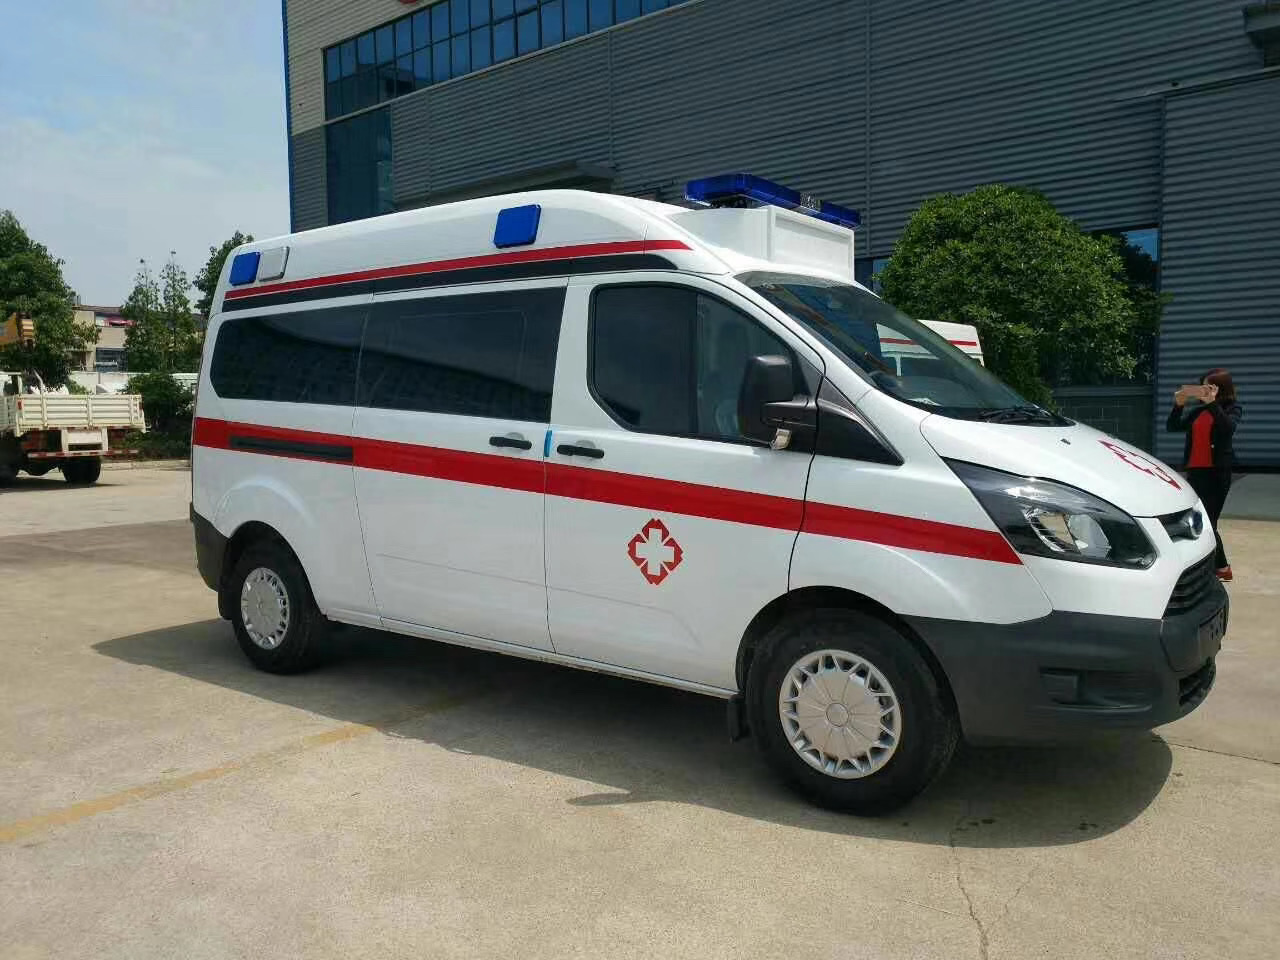 潍坊急救中心120救护车出租医帮扶公司